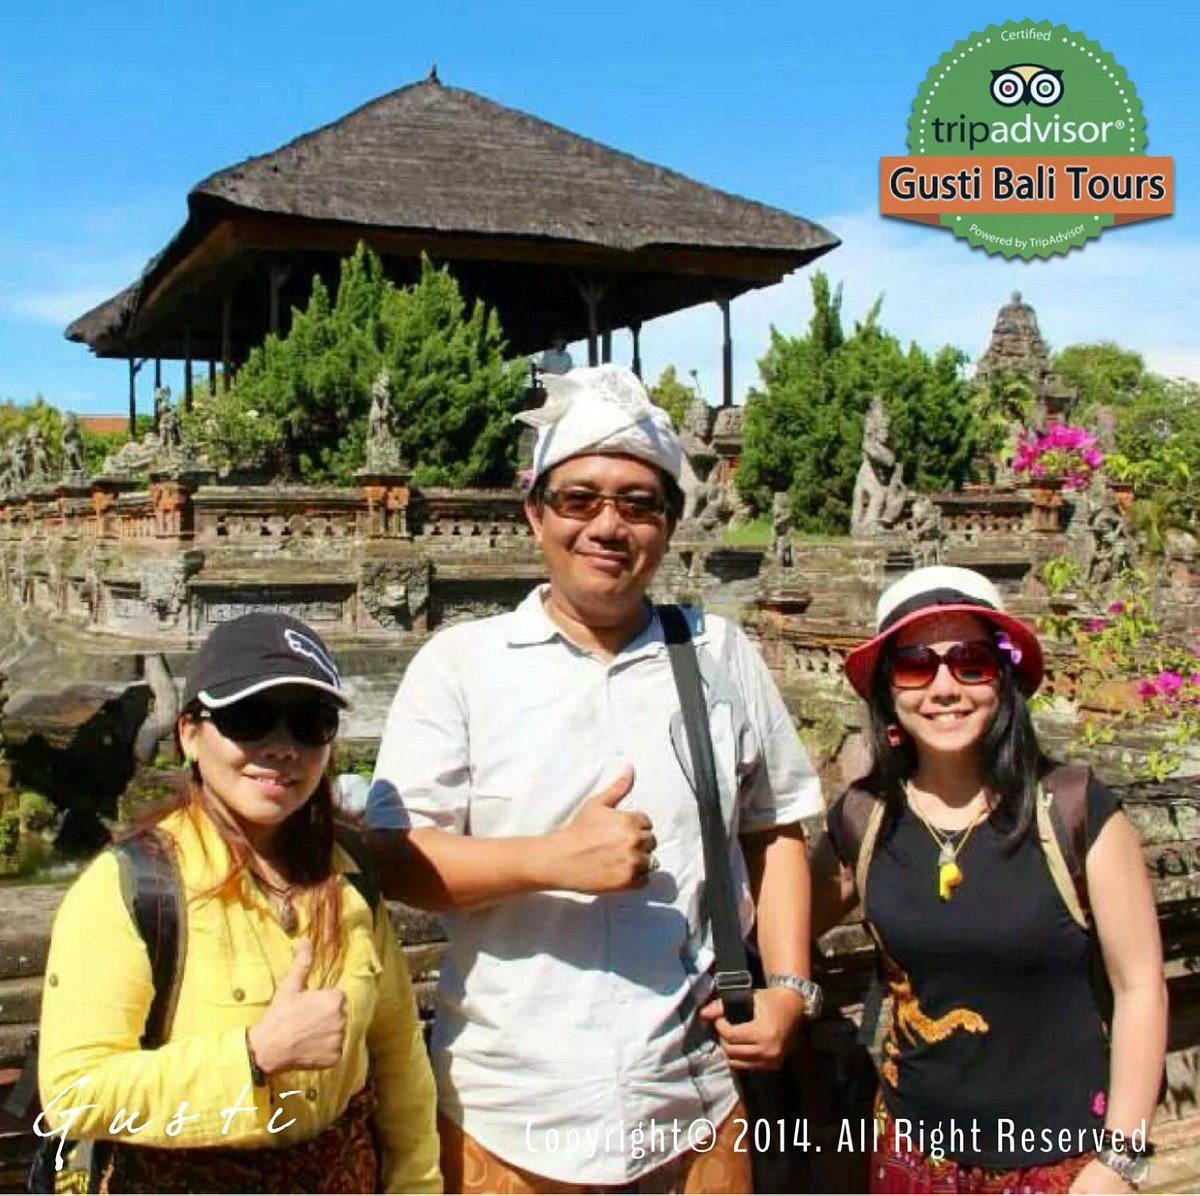 Gusti Bali Tours